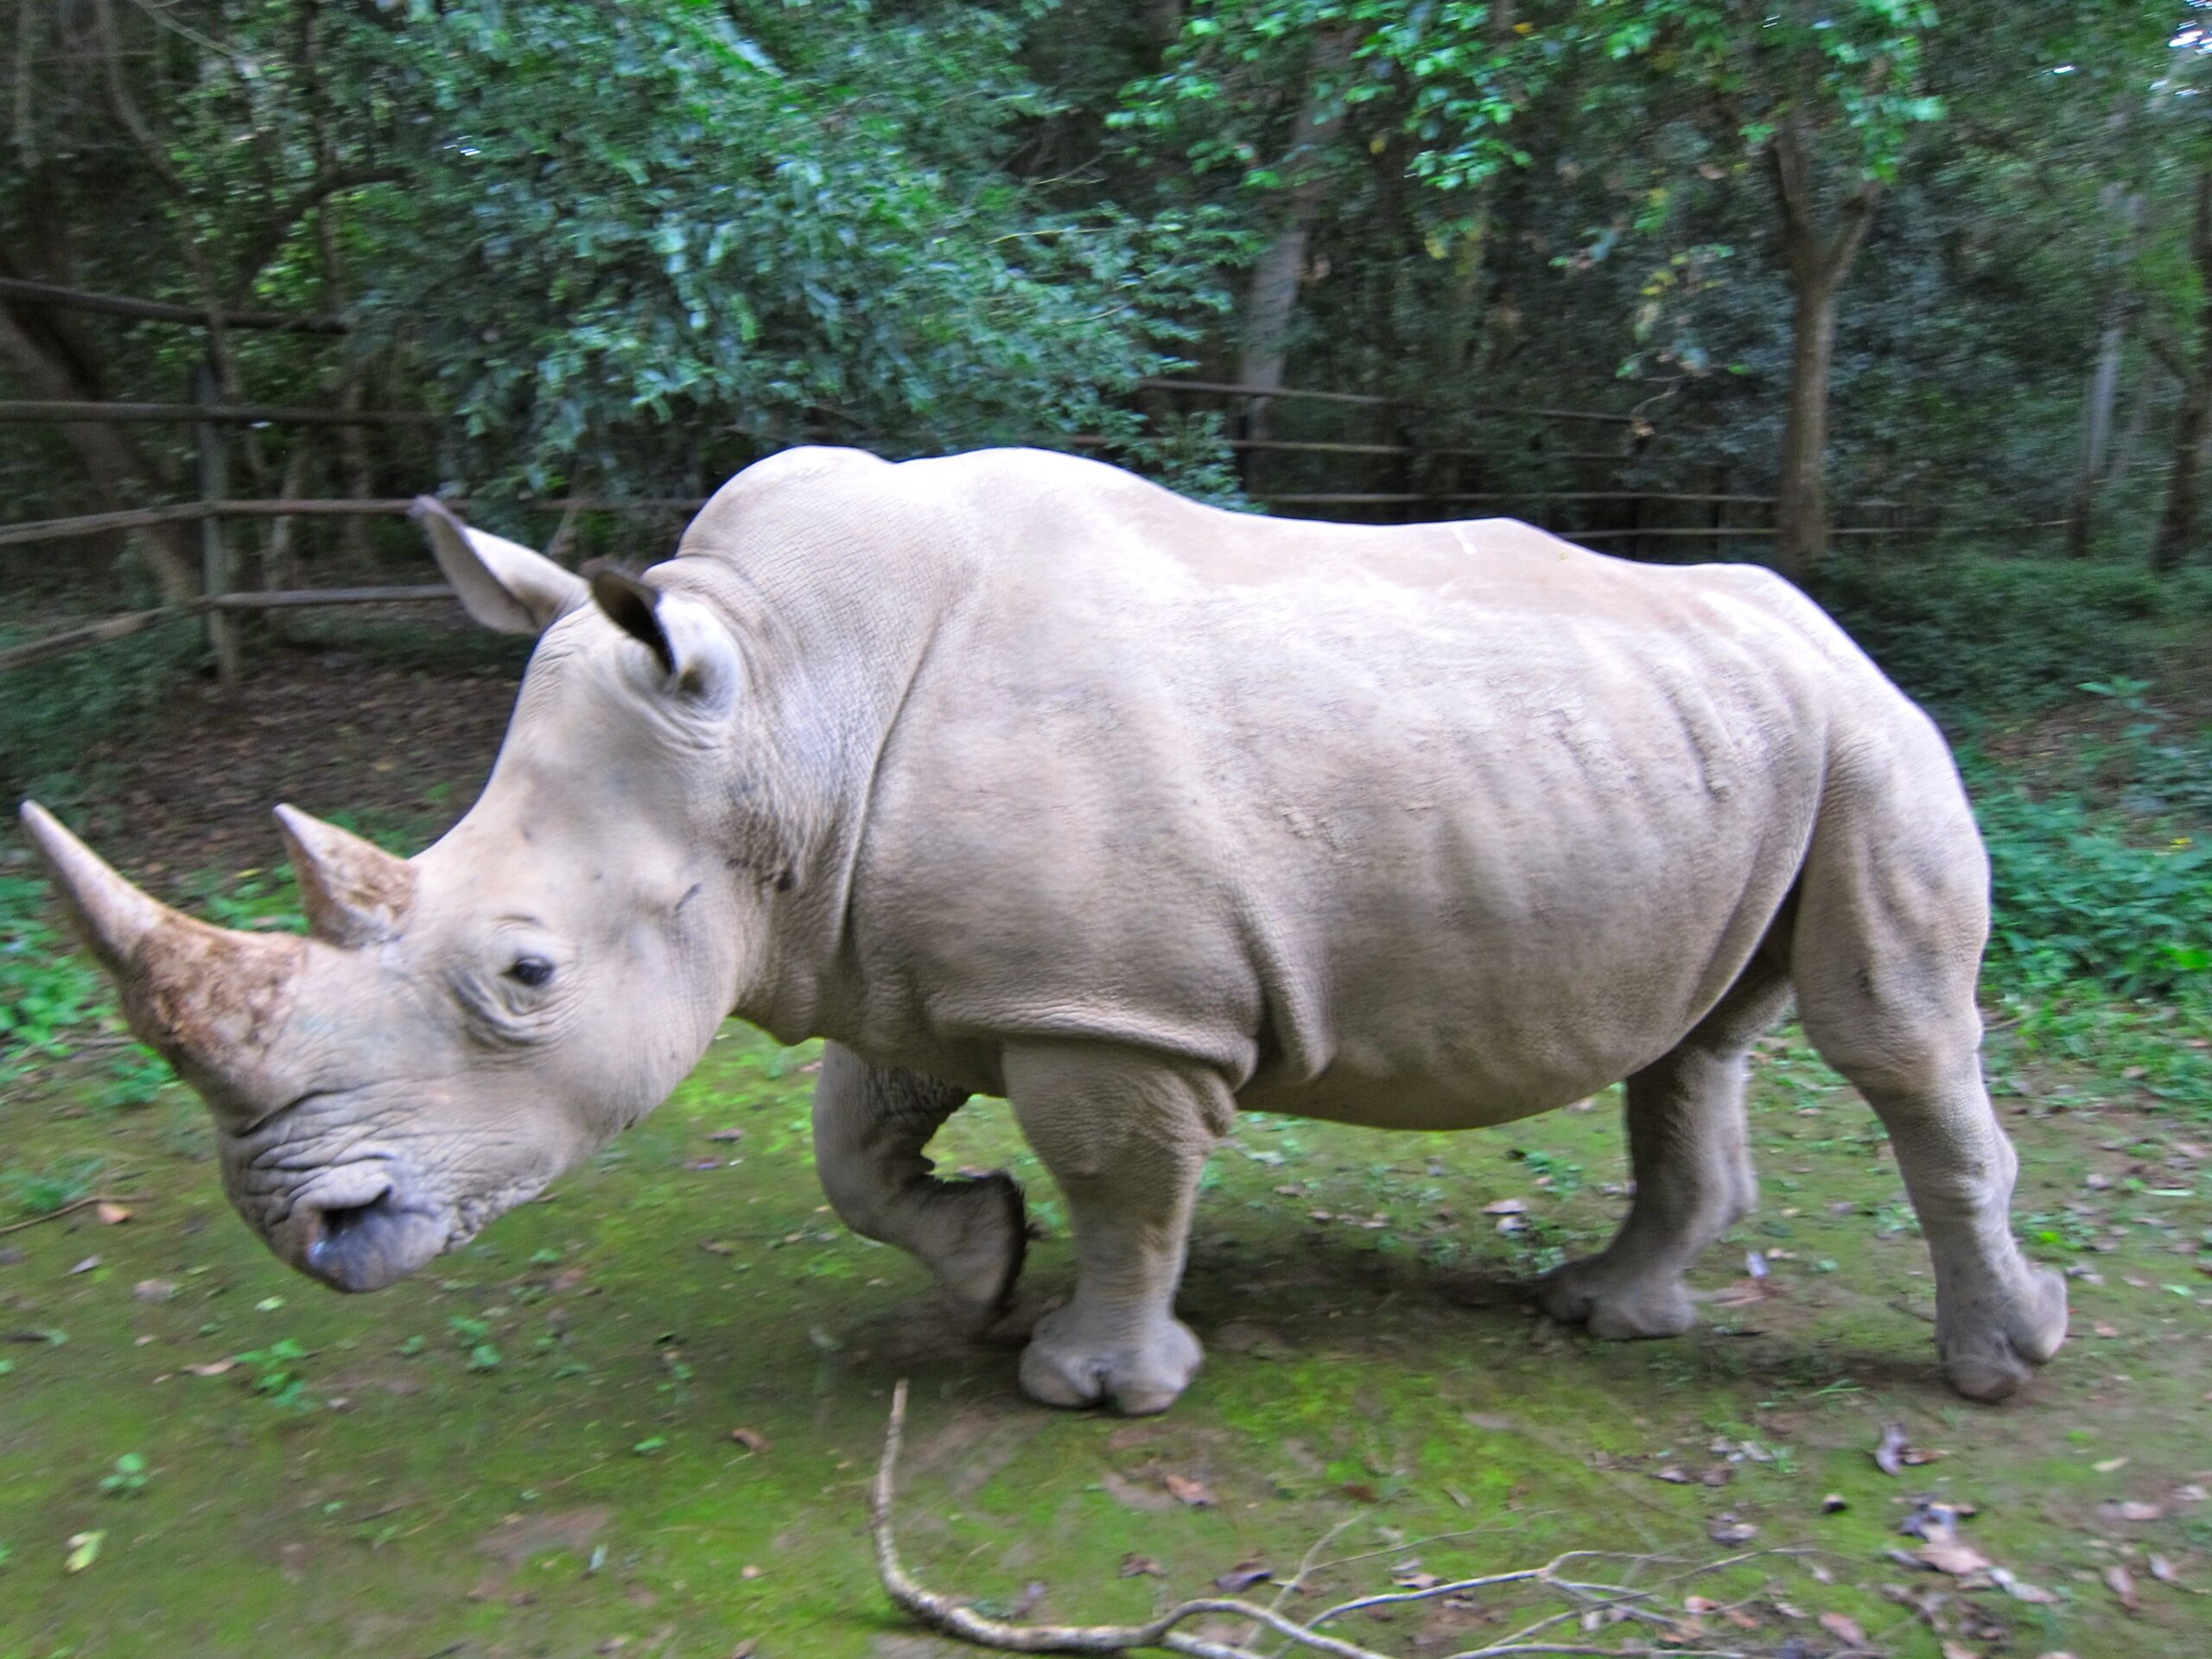 The Northern White Rhino